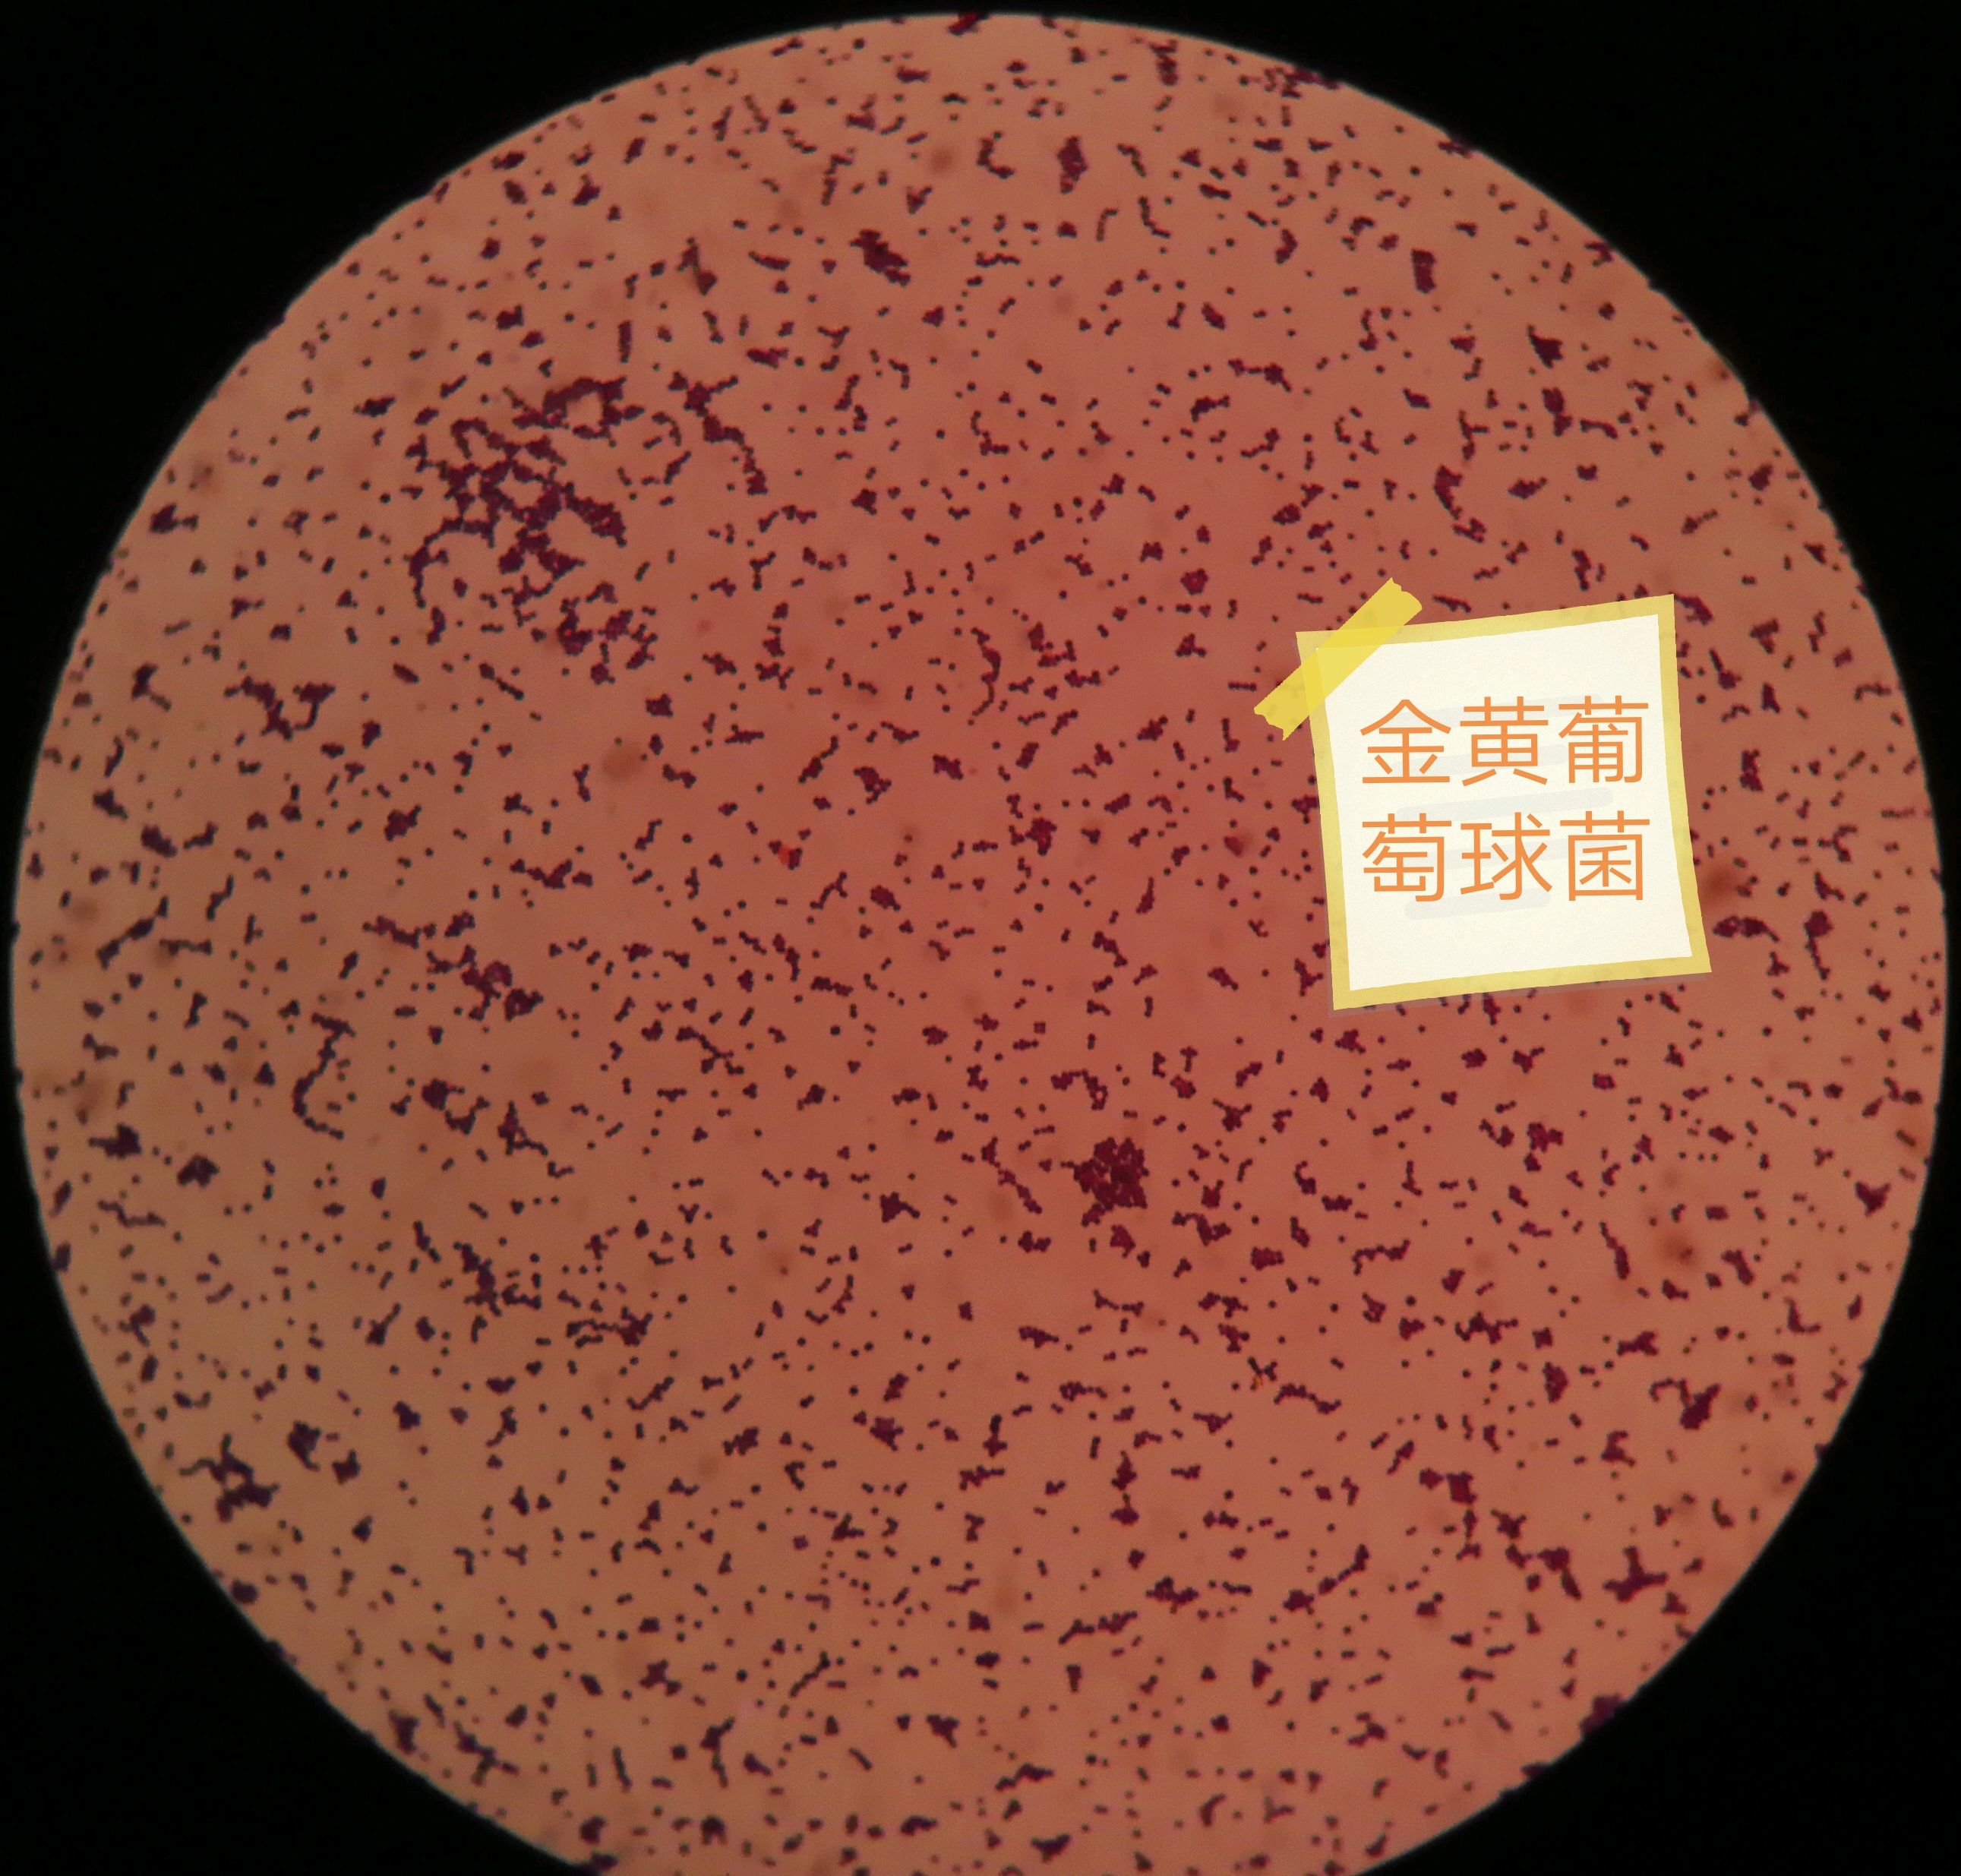 今天发现了两种细菌:表皮葡萄球菌和金黄葡萄球菌,分享一下.